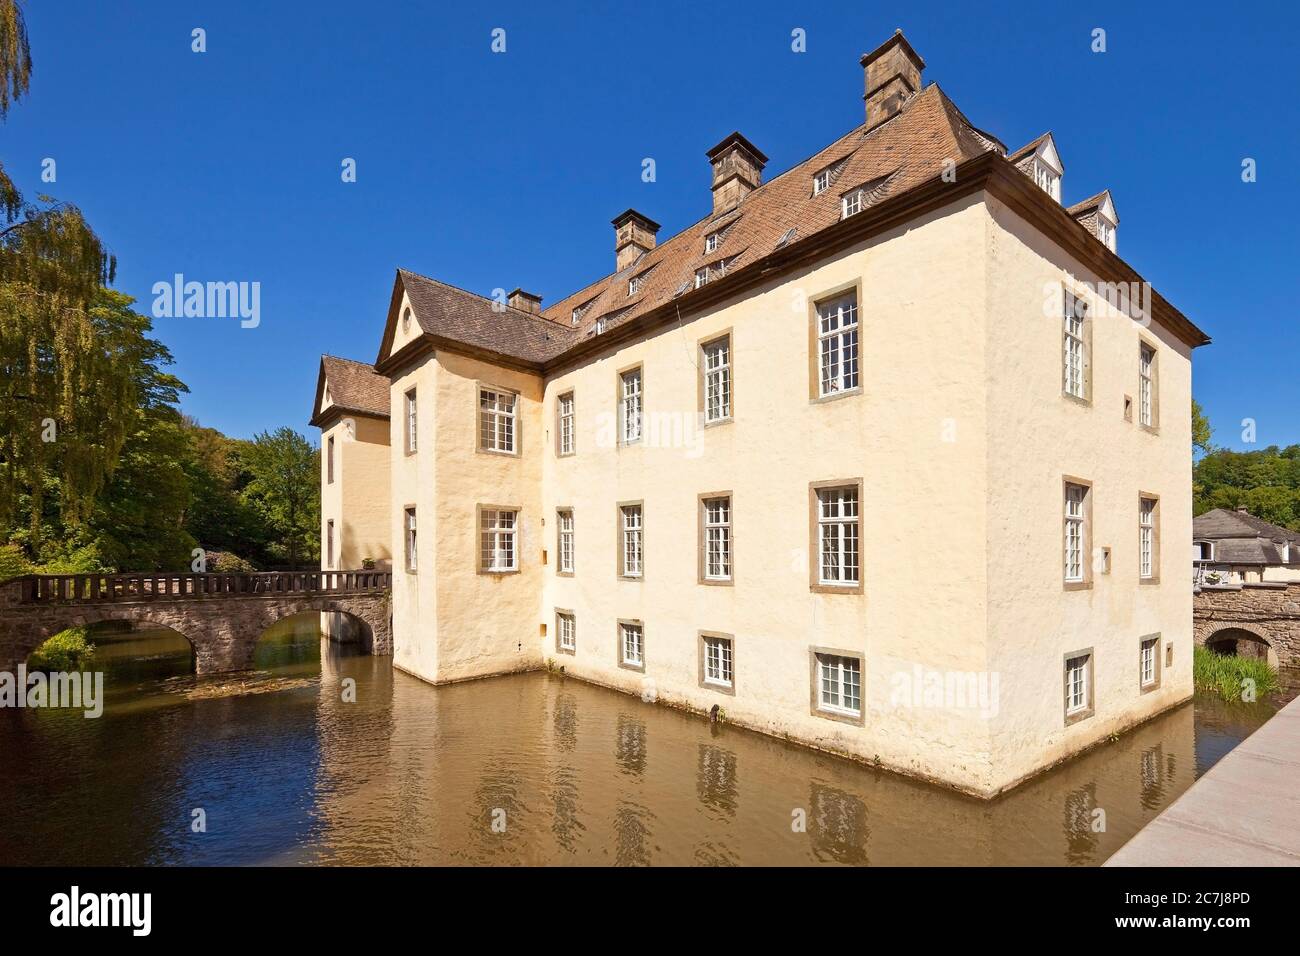 Château de Wocklum, Allemagne, Rhénanie-du-Nord-Westphalie, pays aigre, Balve Banque D'Images